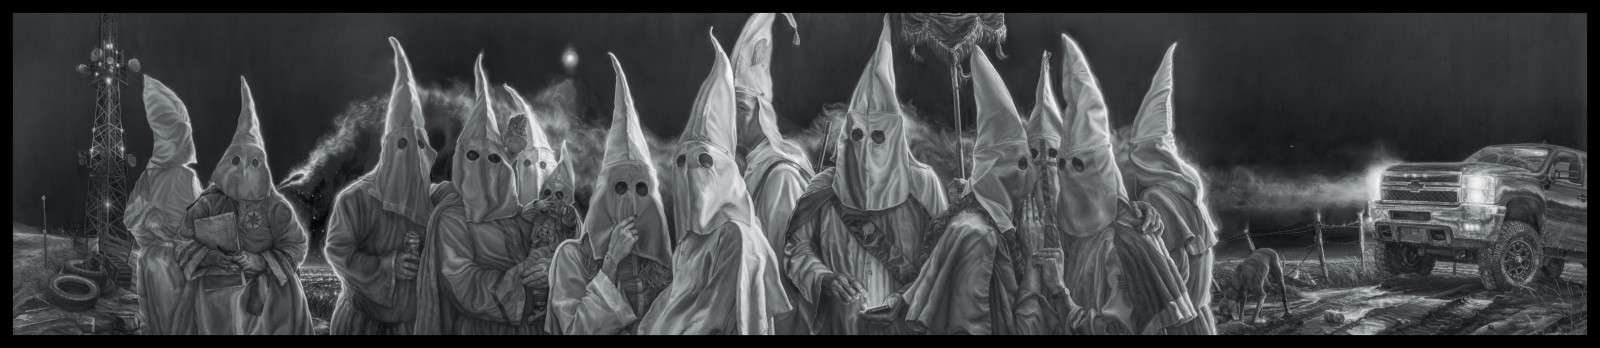 sơn, thực tế, Chế, Nghệ sĩ Vincent Valdez, Ku Klux Klan